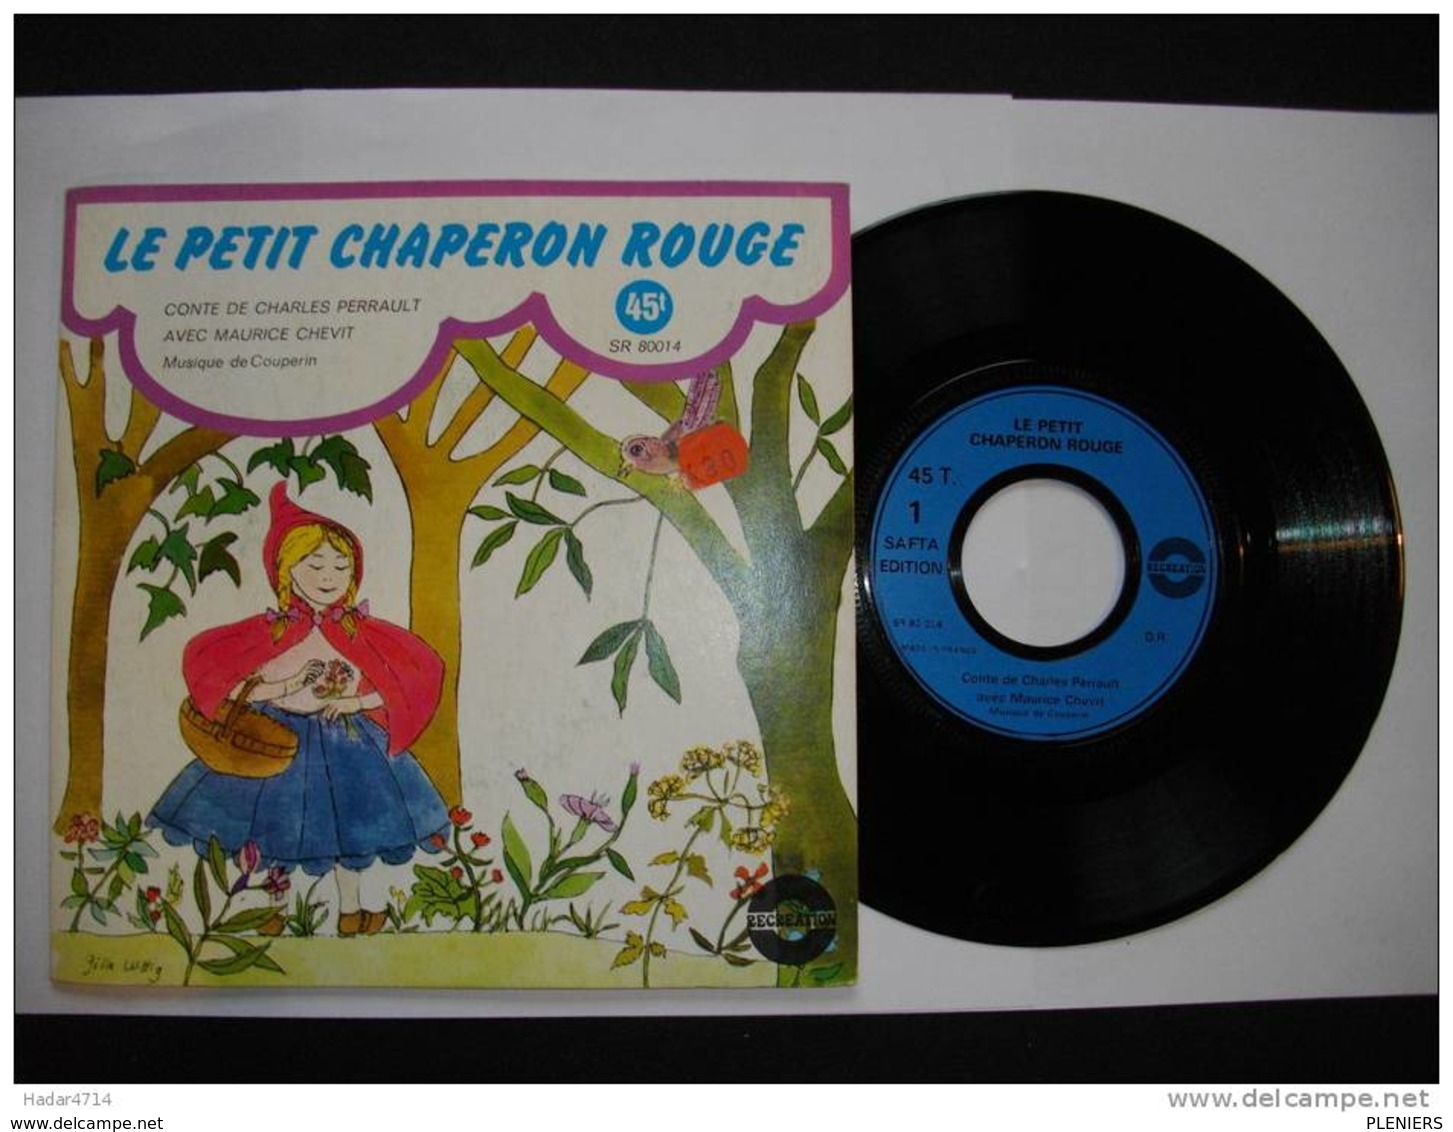 LE PETIT CHAPERON ROUGE  AVEC MAURICE CHEVIT MUSIQUE DE COUPERIN  45 TOURS ALBUM SR 80014 - Children